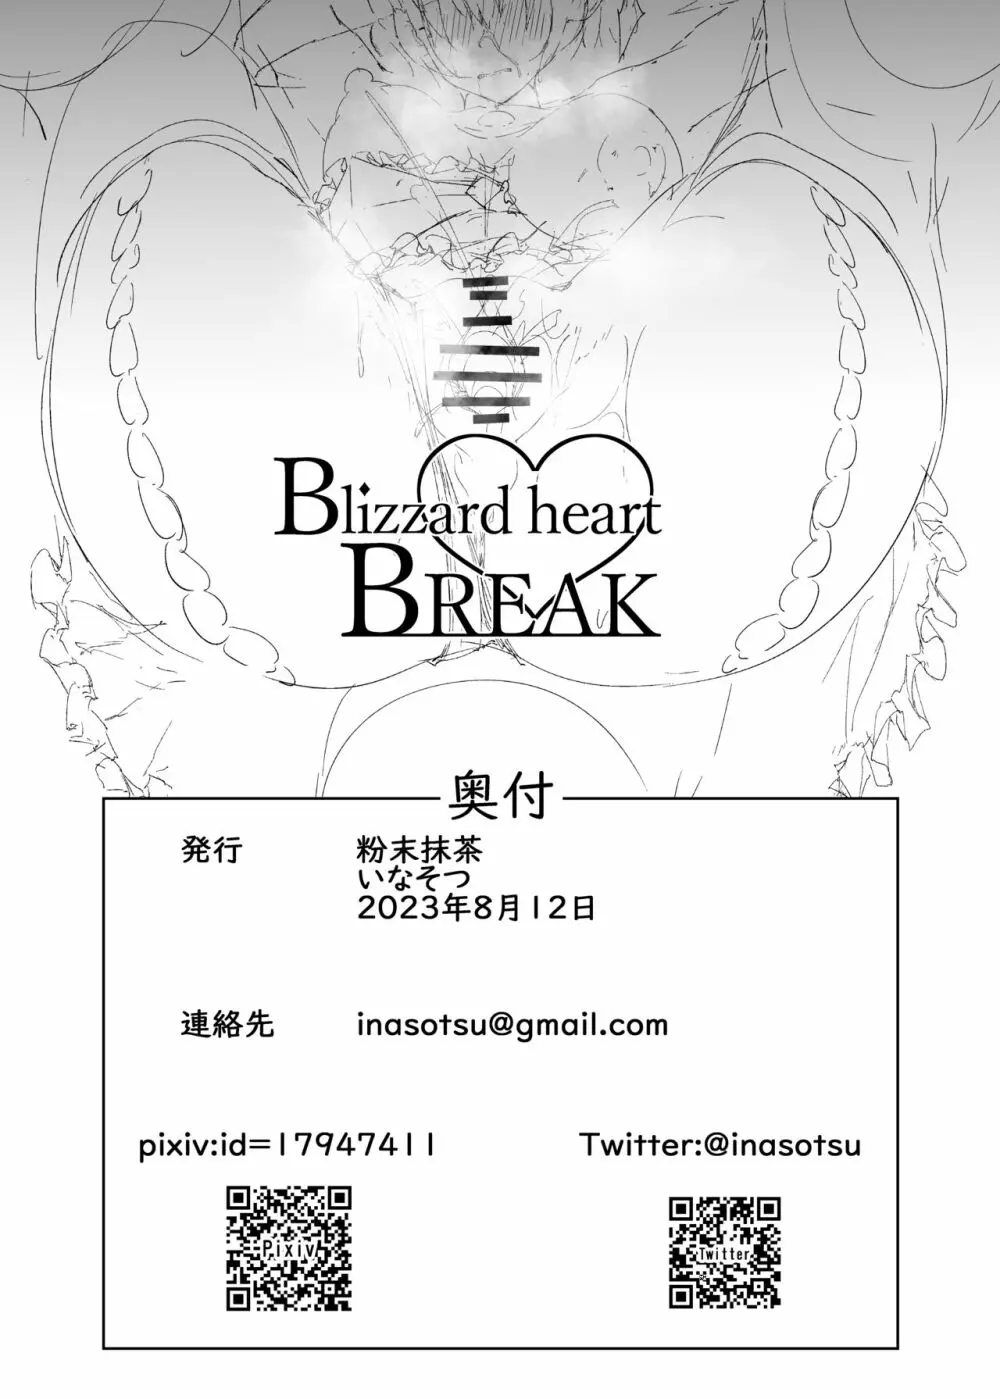 Blizzard heart BREAK